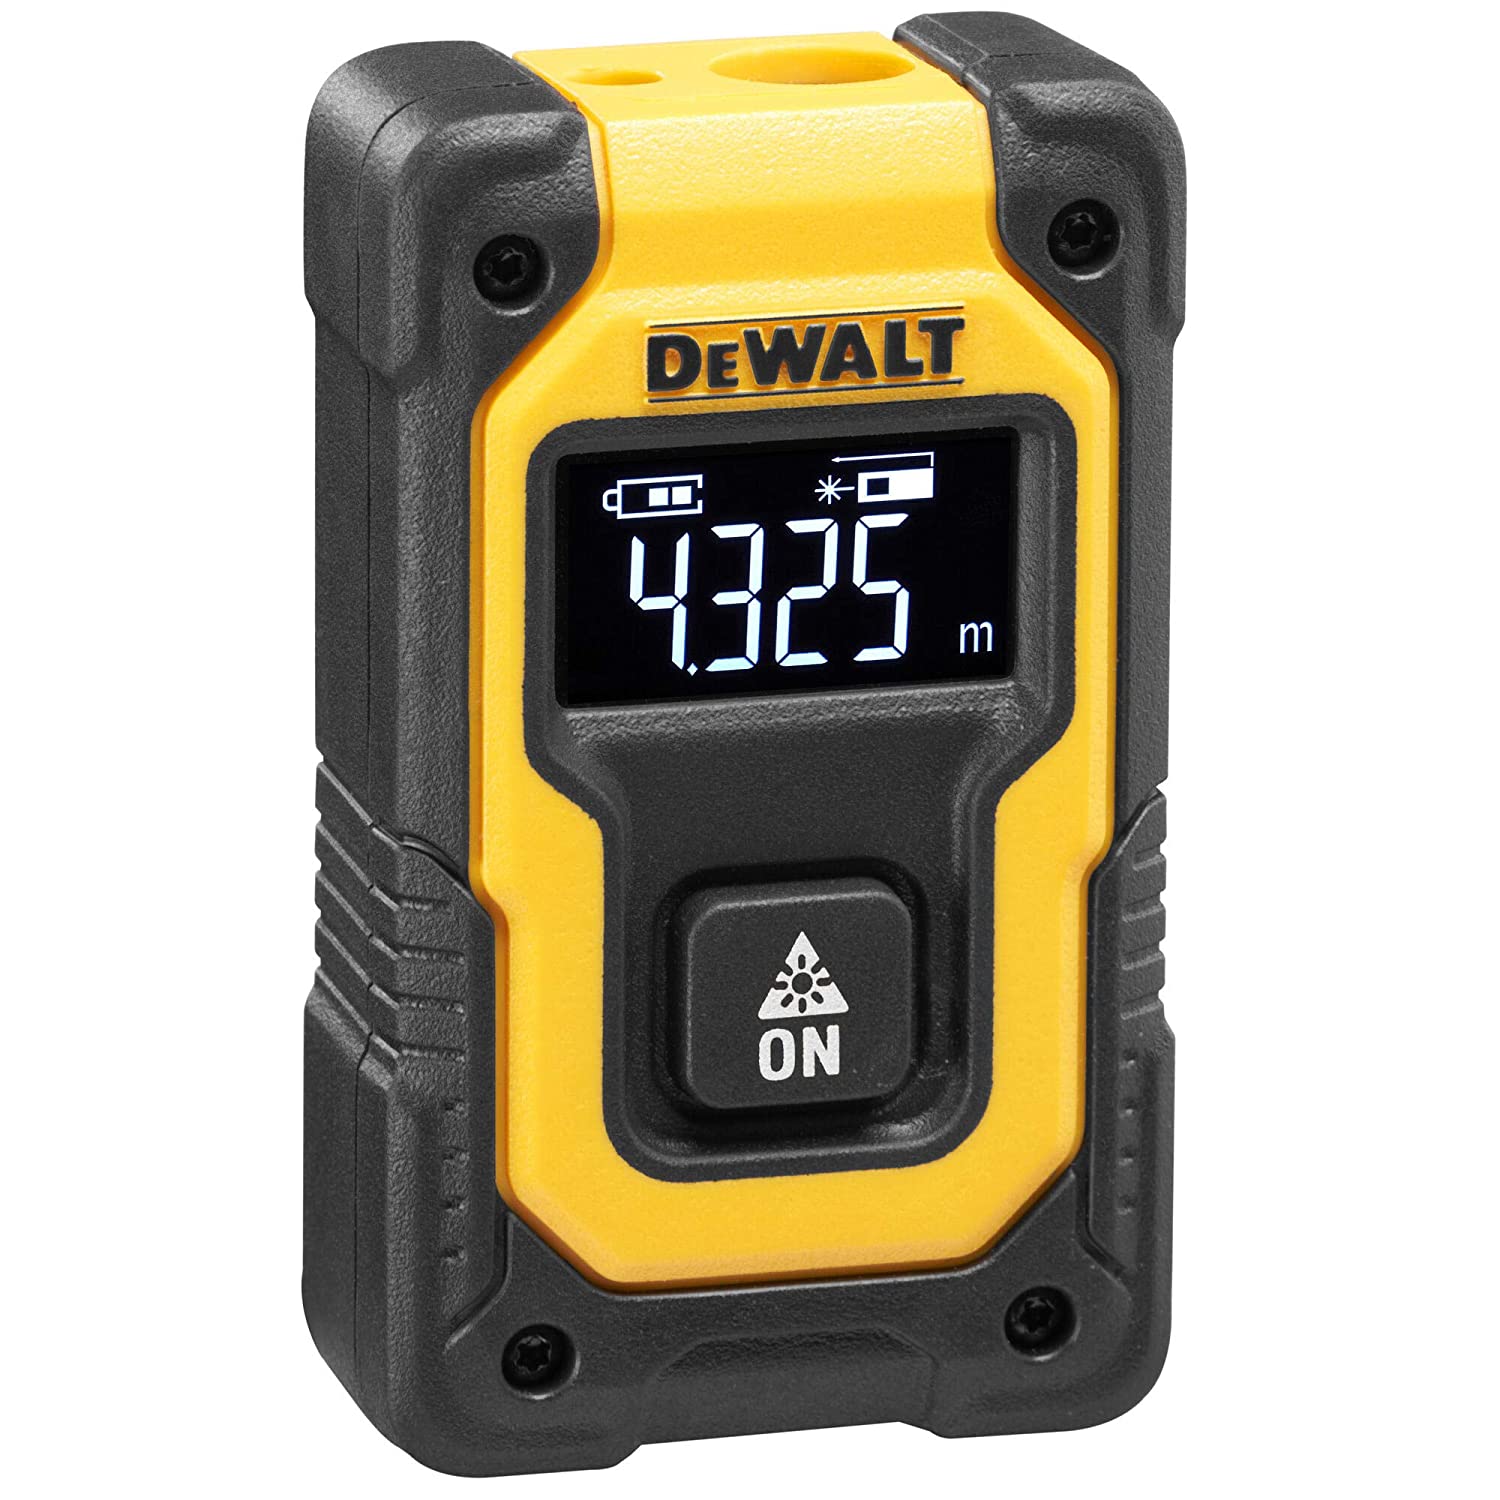 DeWalt Rangefinder Meter Pocket Laser Distance Measurer DW055PL-XJ